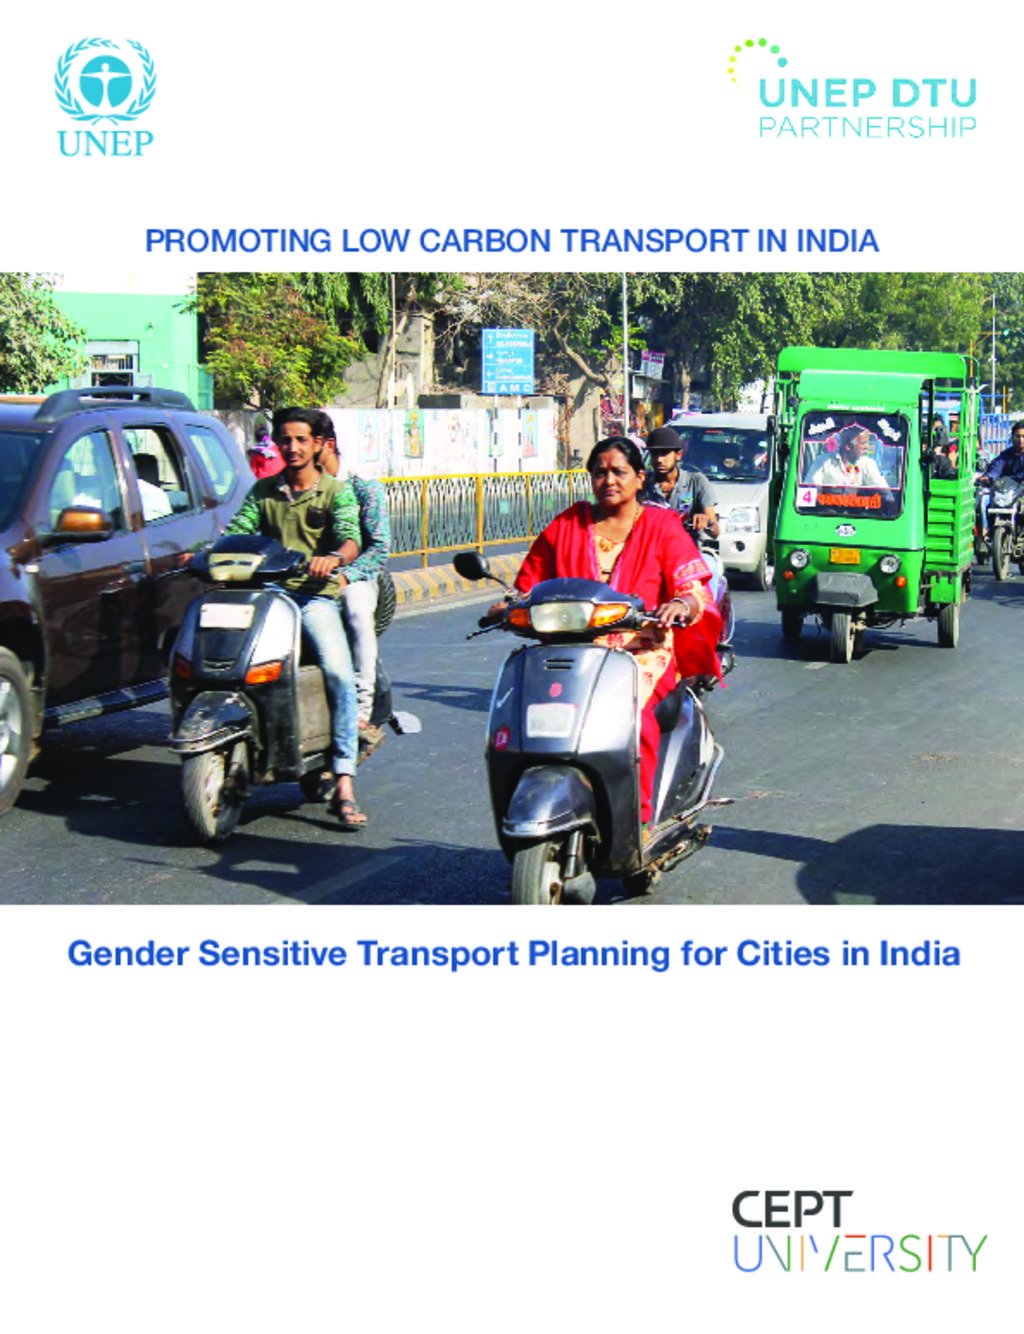 Gender Sensitive Transport Planning